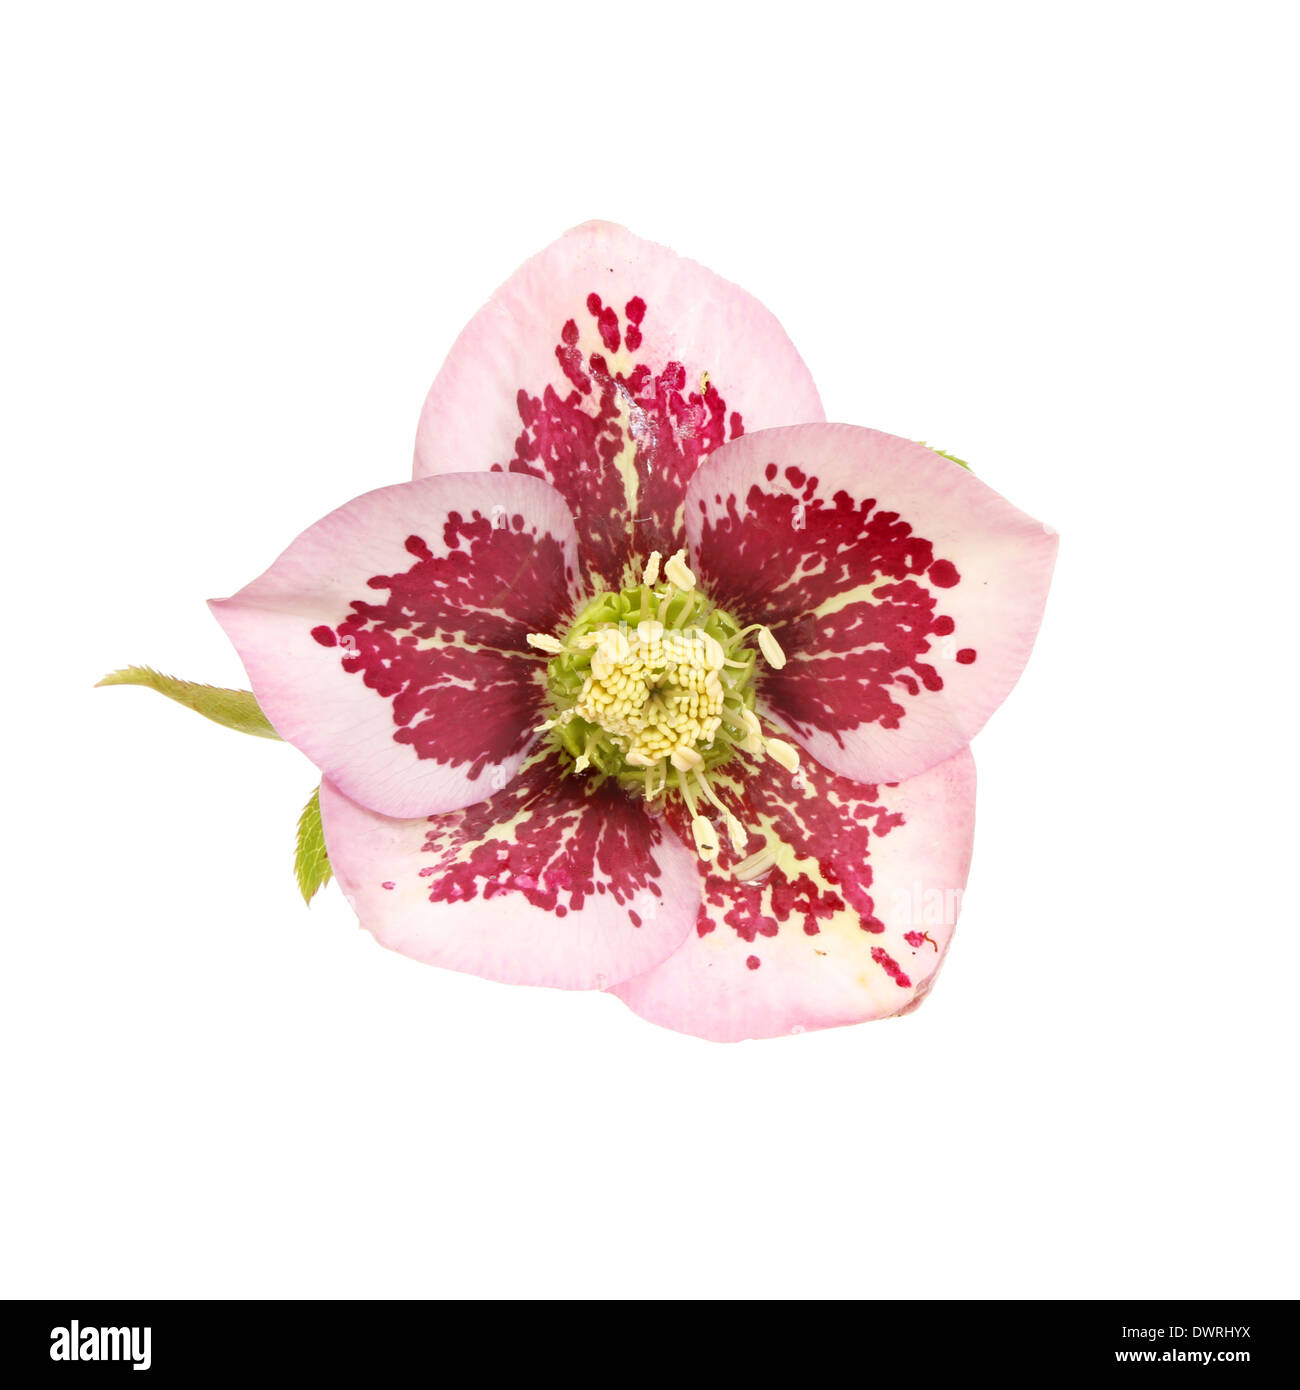 L'elleboro flower isolata contro bianco Foto Stock